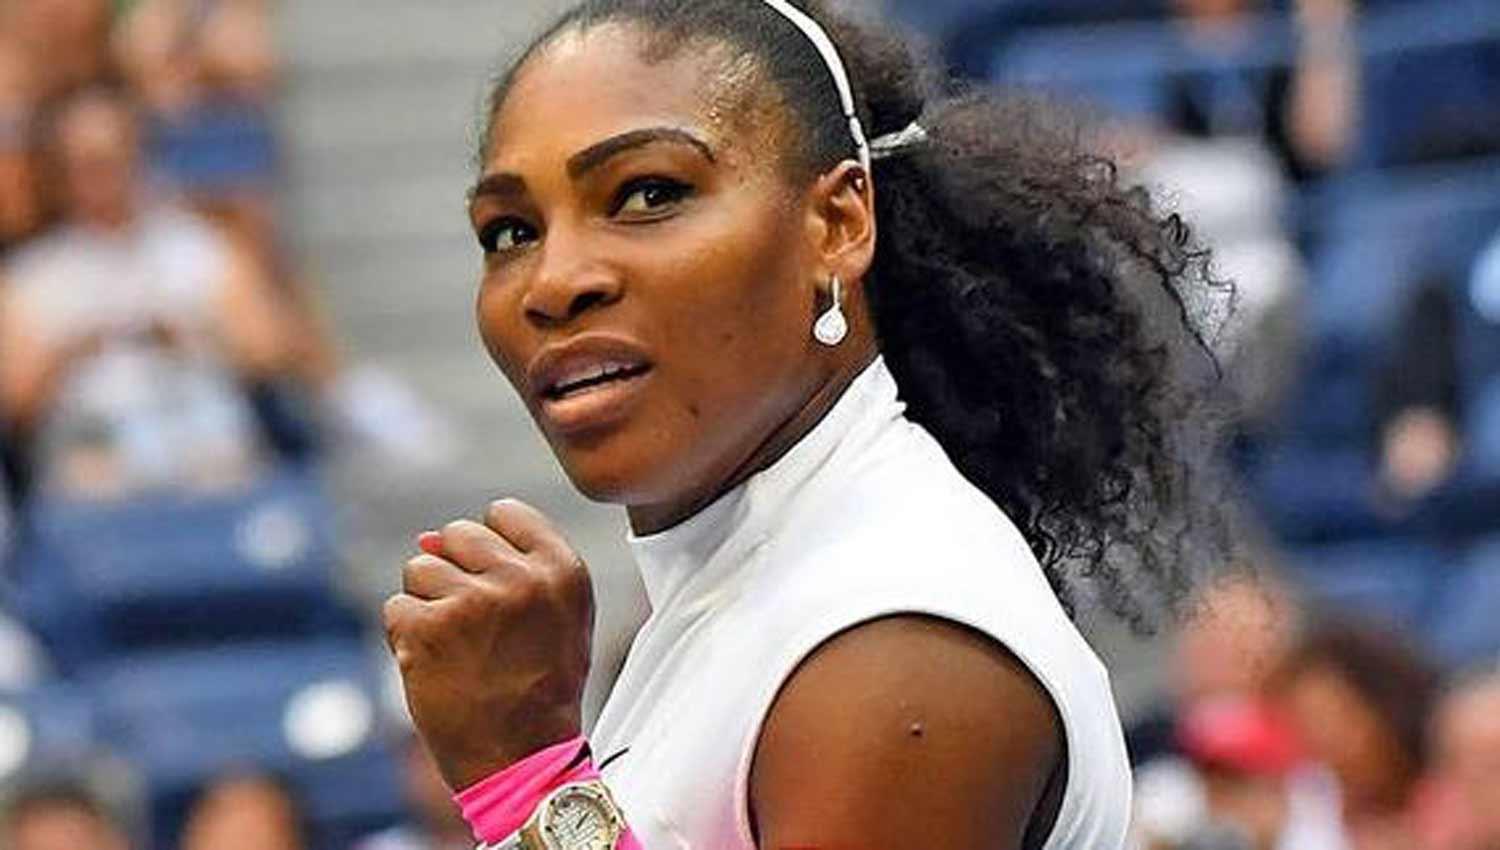 LA ÚNICA. Serena Williams aparece en la lista de 100 deportistas mejores pagos entre 99 varones. (ARCHIVO)